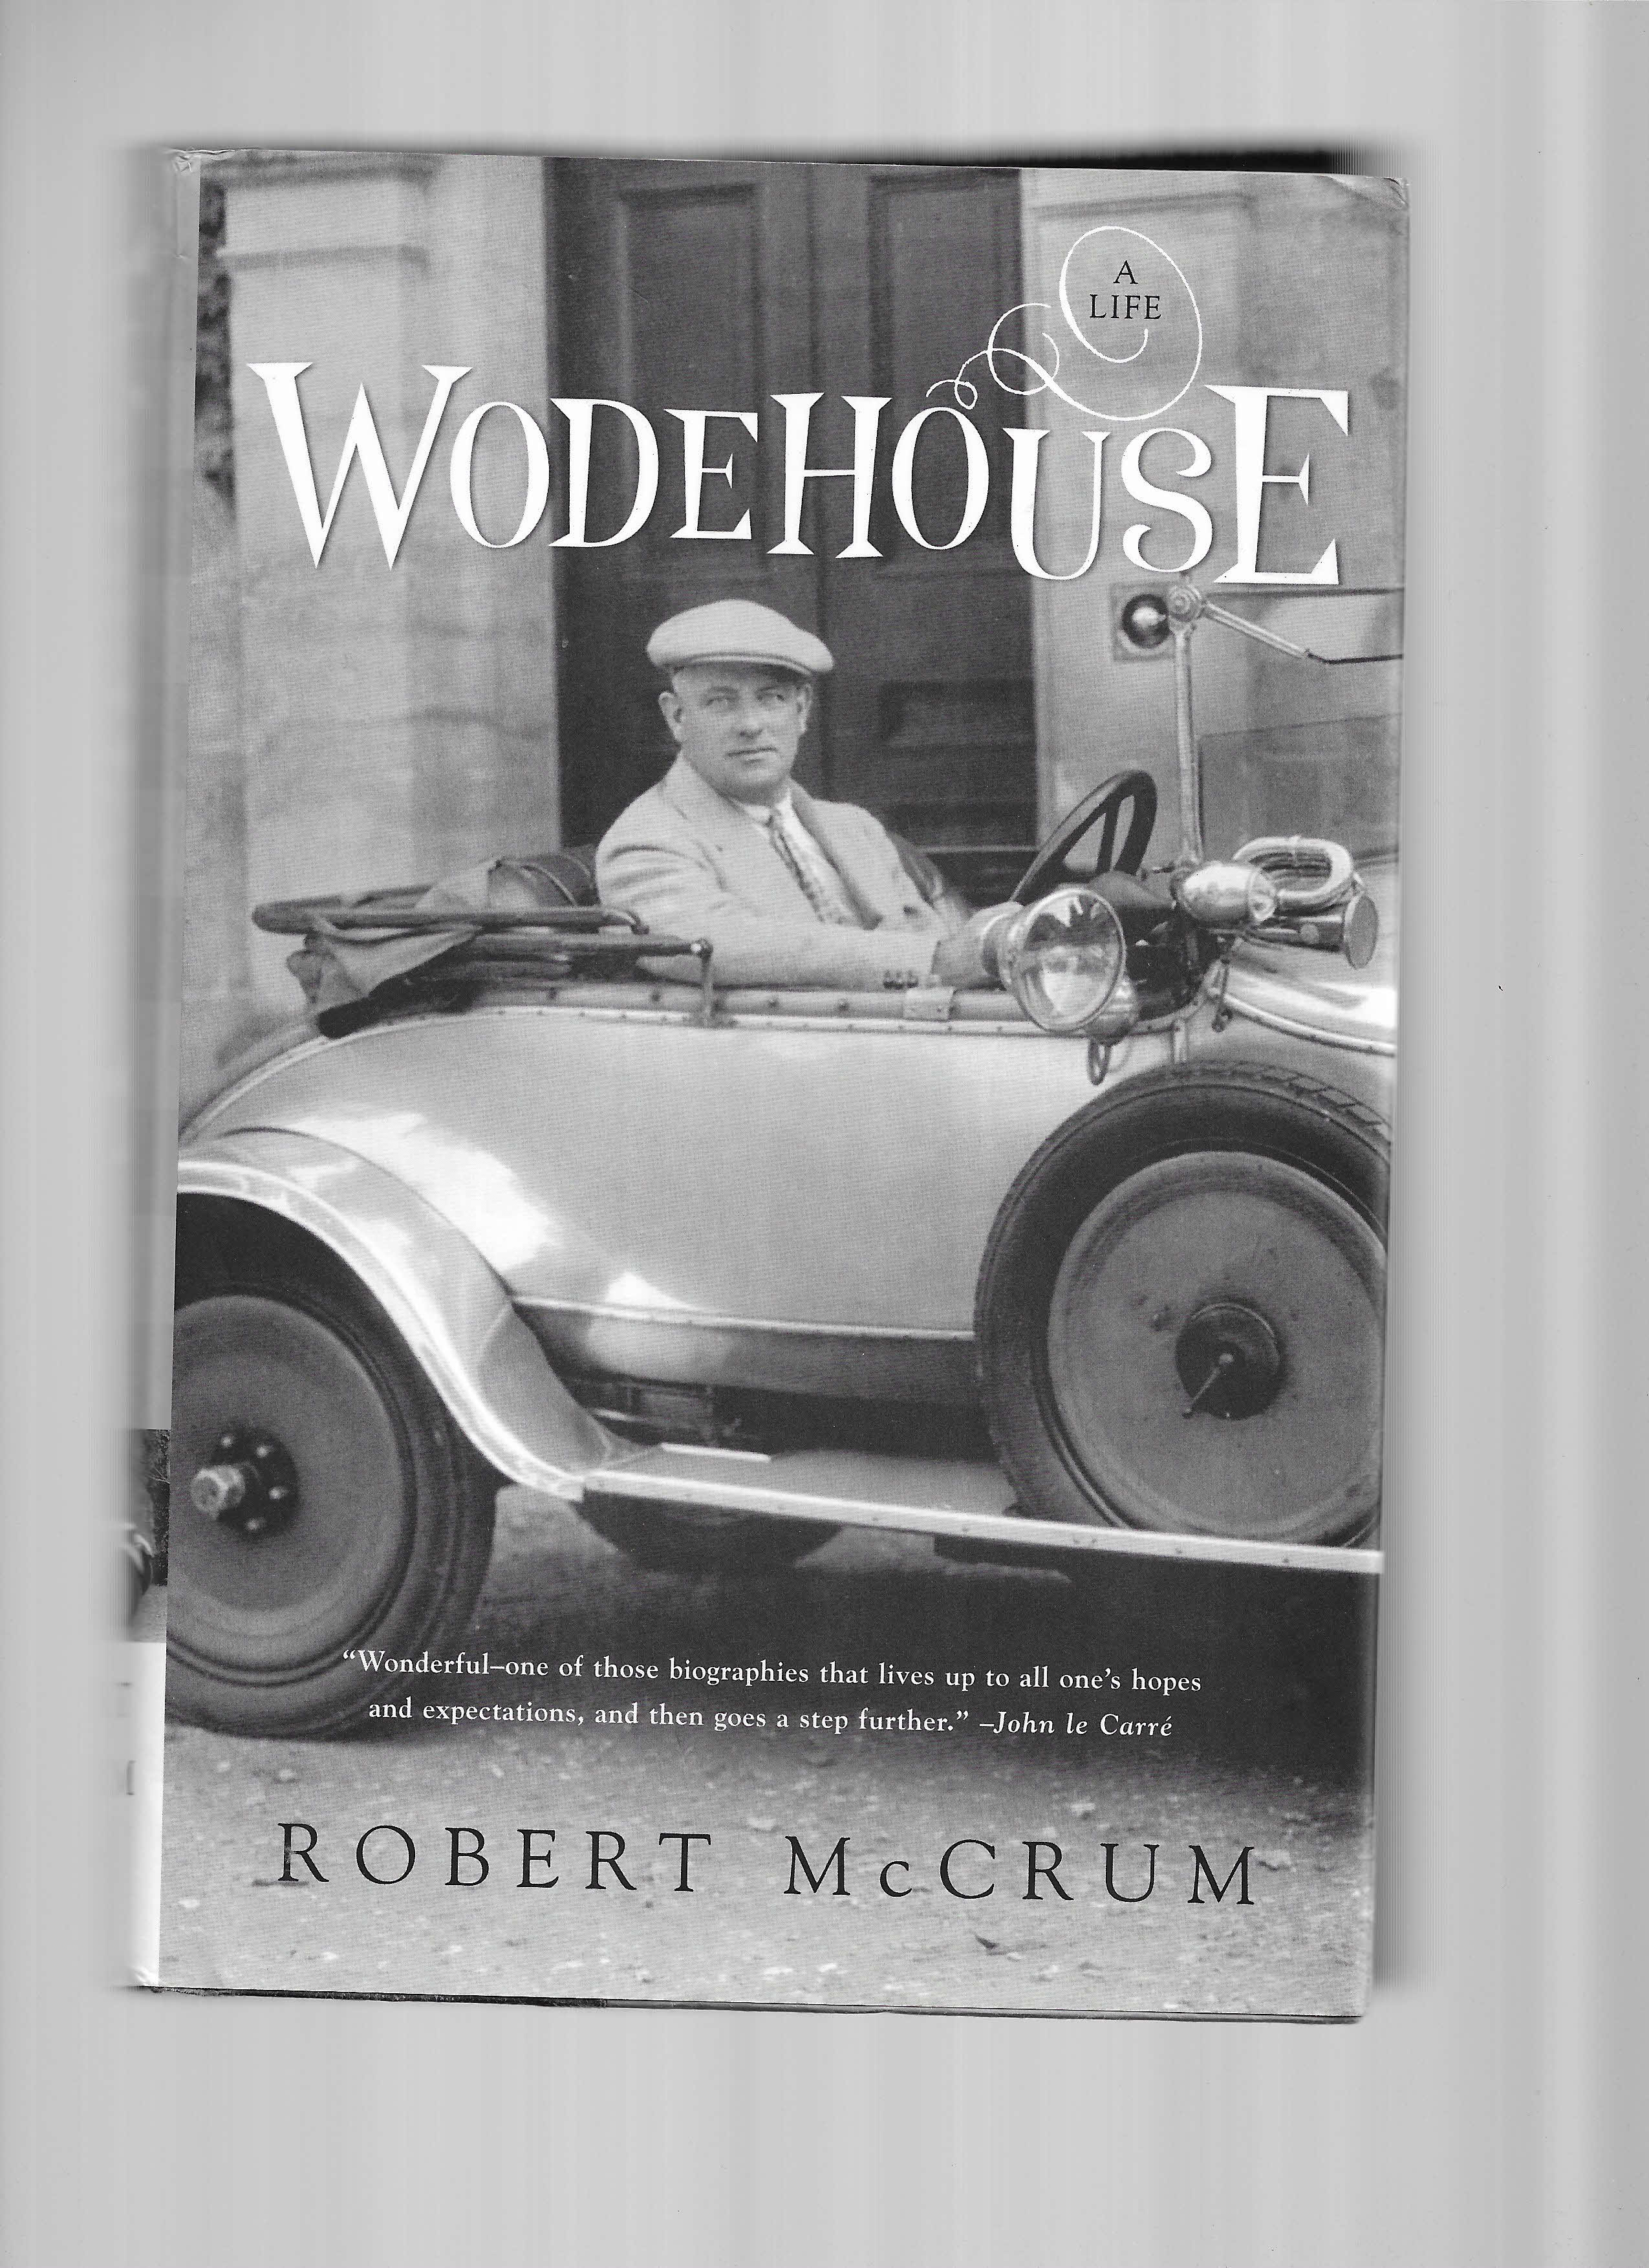 WODEHOUSE: A Life - McCrum, Robert